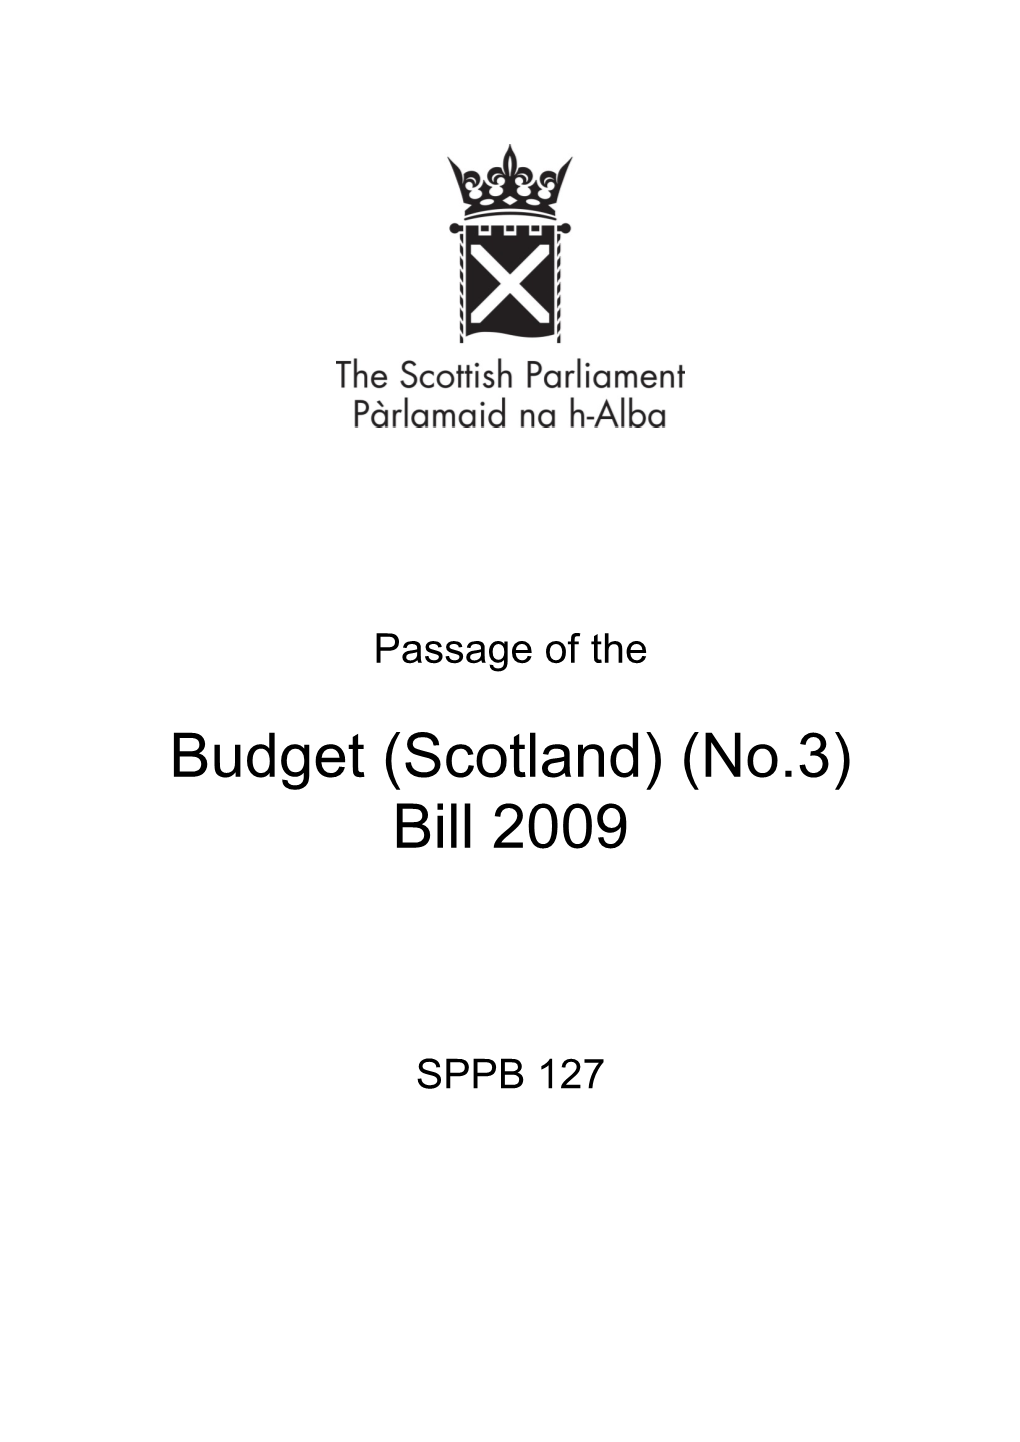 Budget (Scotland) (No.3) Bill 2009